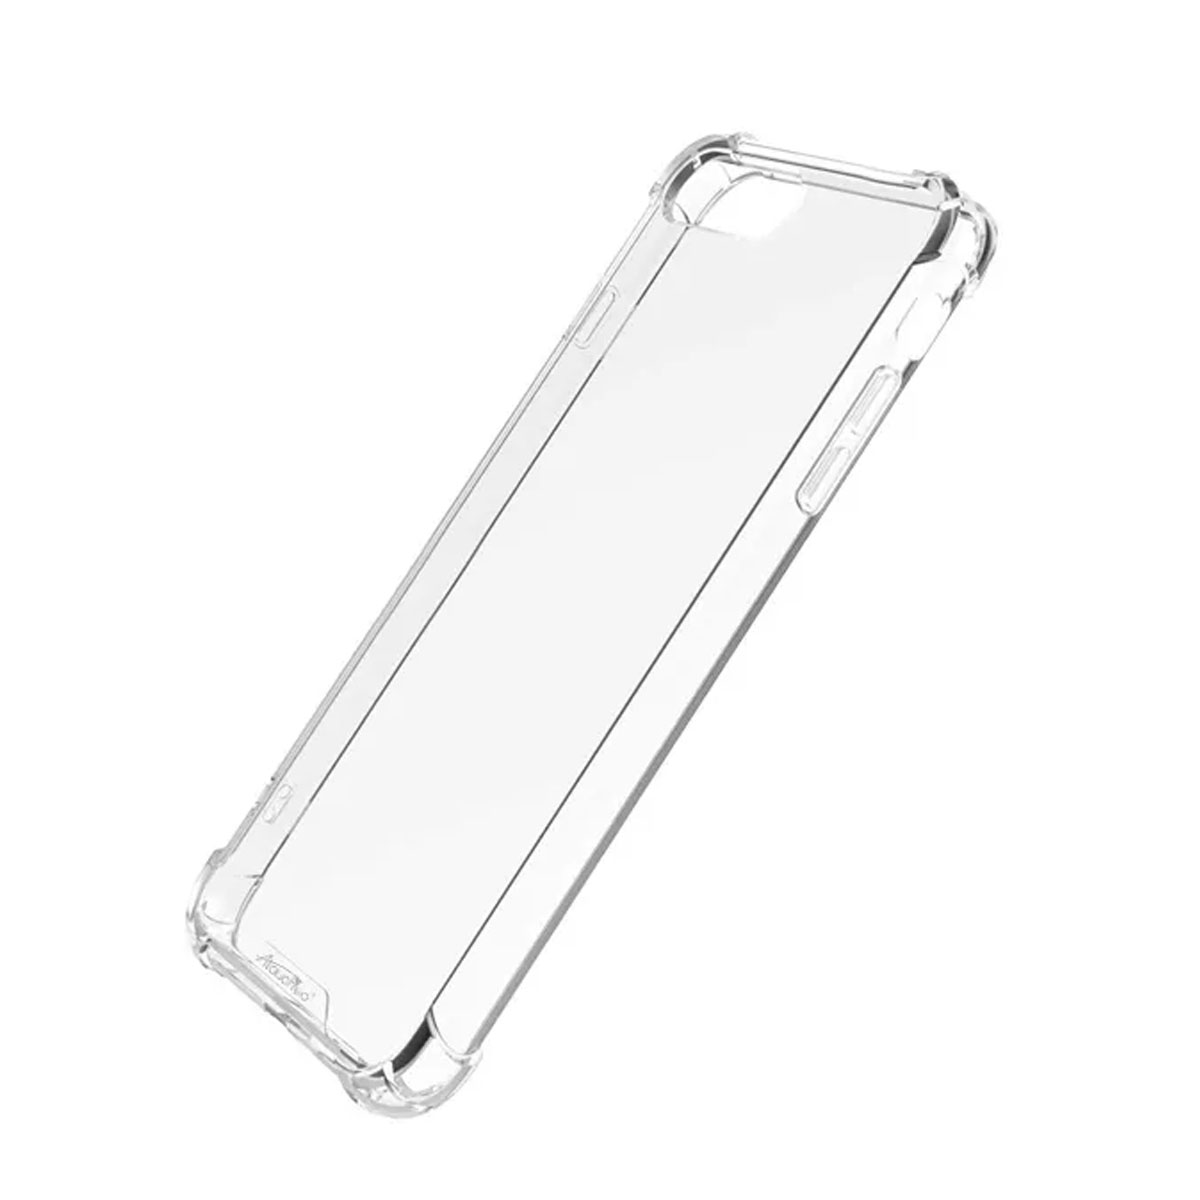 Чехол накладка King Kong Case для APPLE iPhone 7 Plus, iPhone 8 Plus, силикон, противоударный, цвет прозрачный